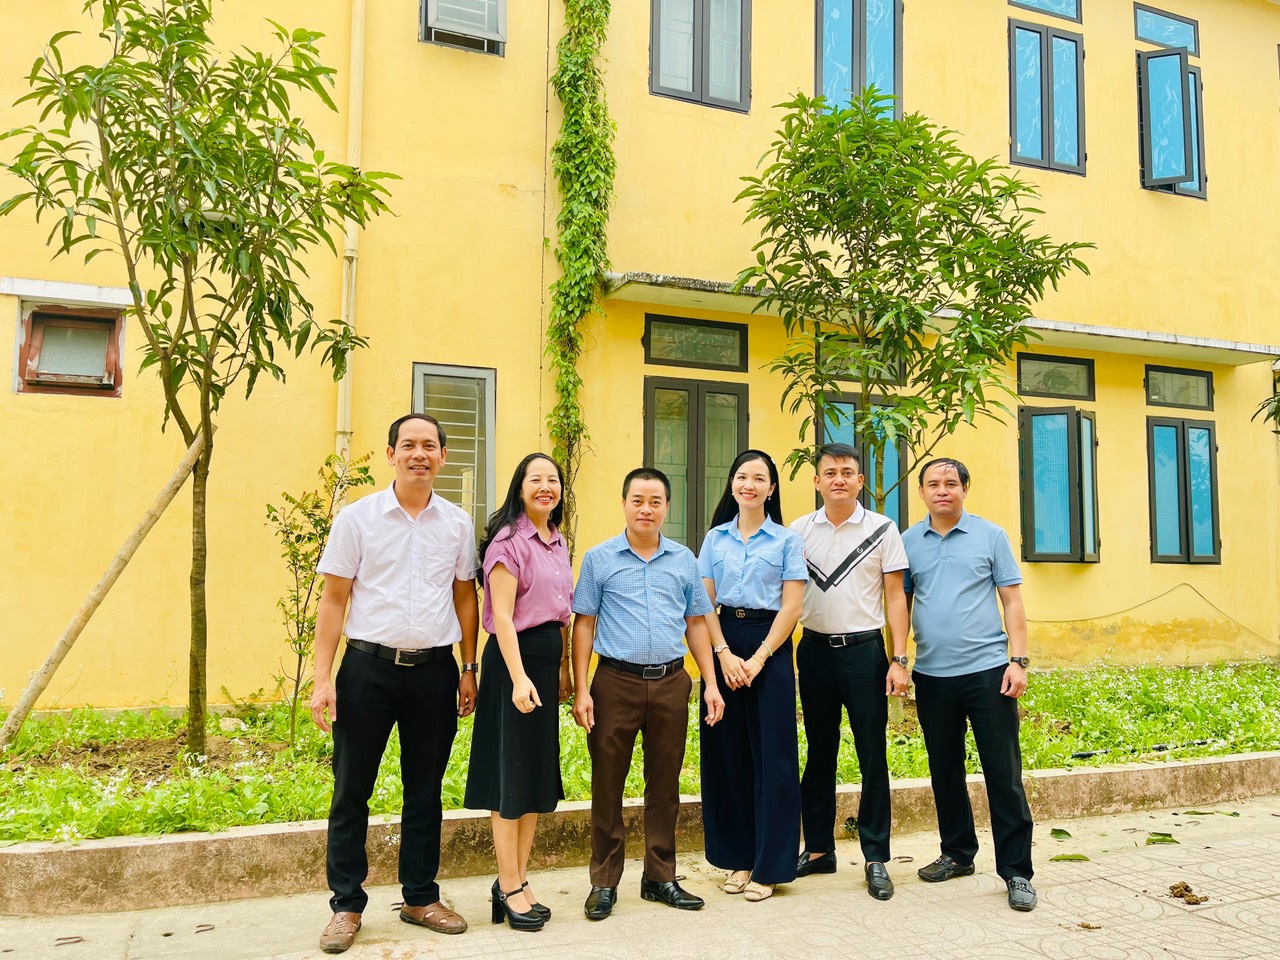 Thông qua Báo Thiếu niên Tiền phong và Nhi đồng tại Hà Tĩnh, đại diện Công ty CP Carbon Miền Trung đã ủng hộ trường TH Thạch Hưng (TP Hà Tĩnh) trồng hai cây xanh trong khuôn viên nhà trường 